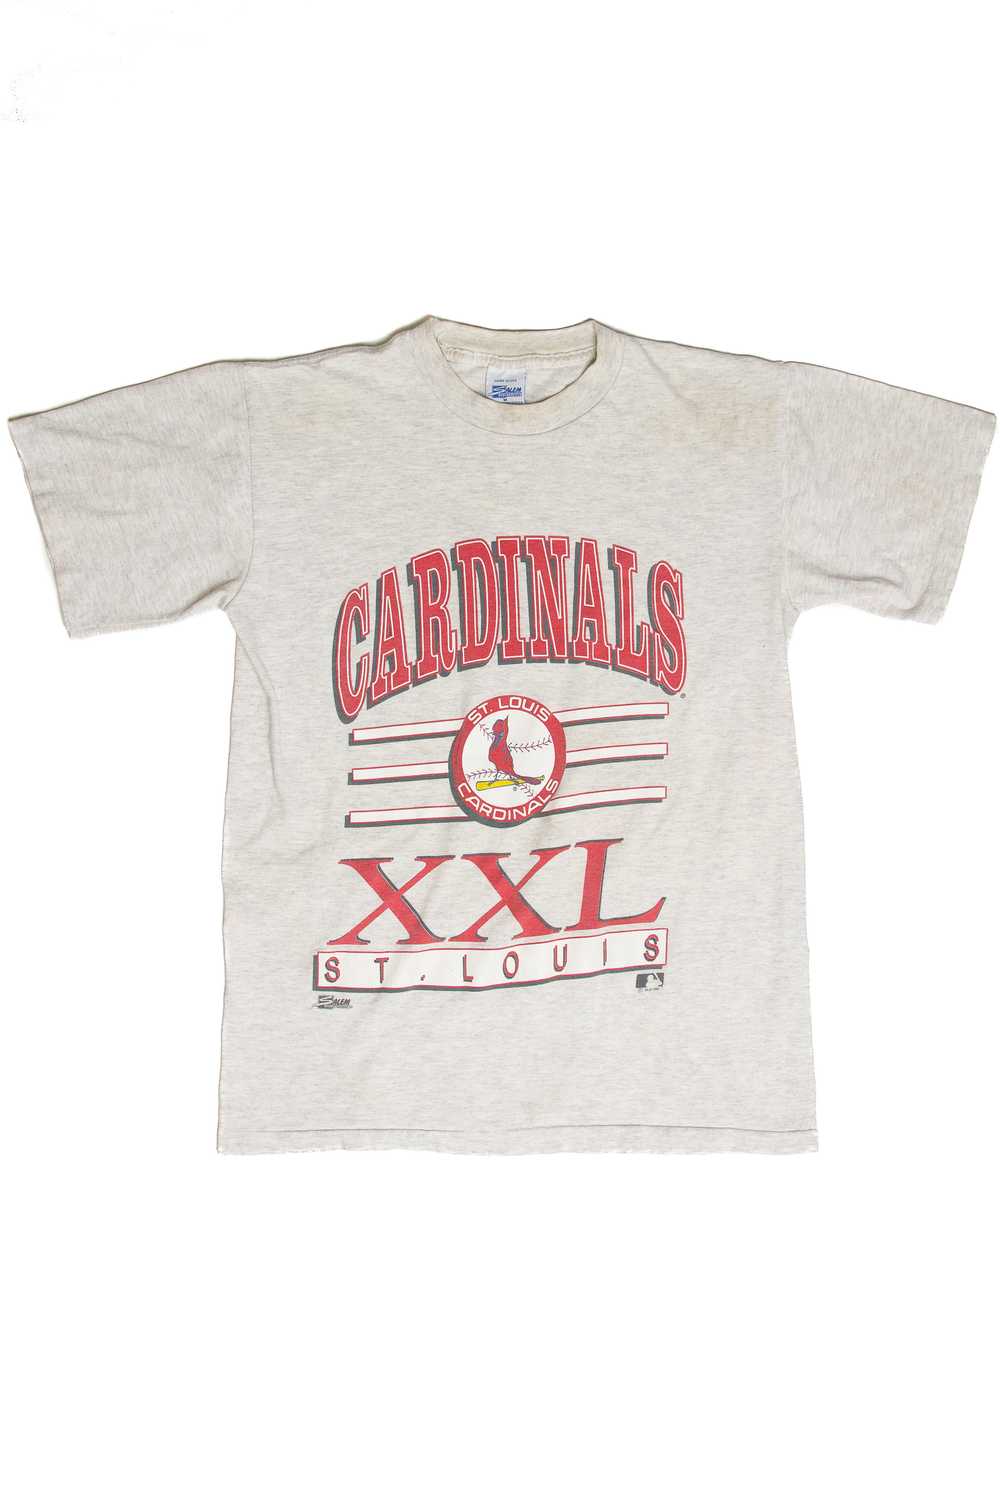 Vintage St. Louis Cardinals T-Shirt (1992) - image 1